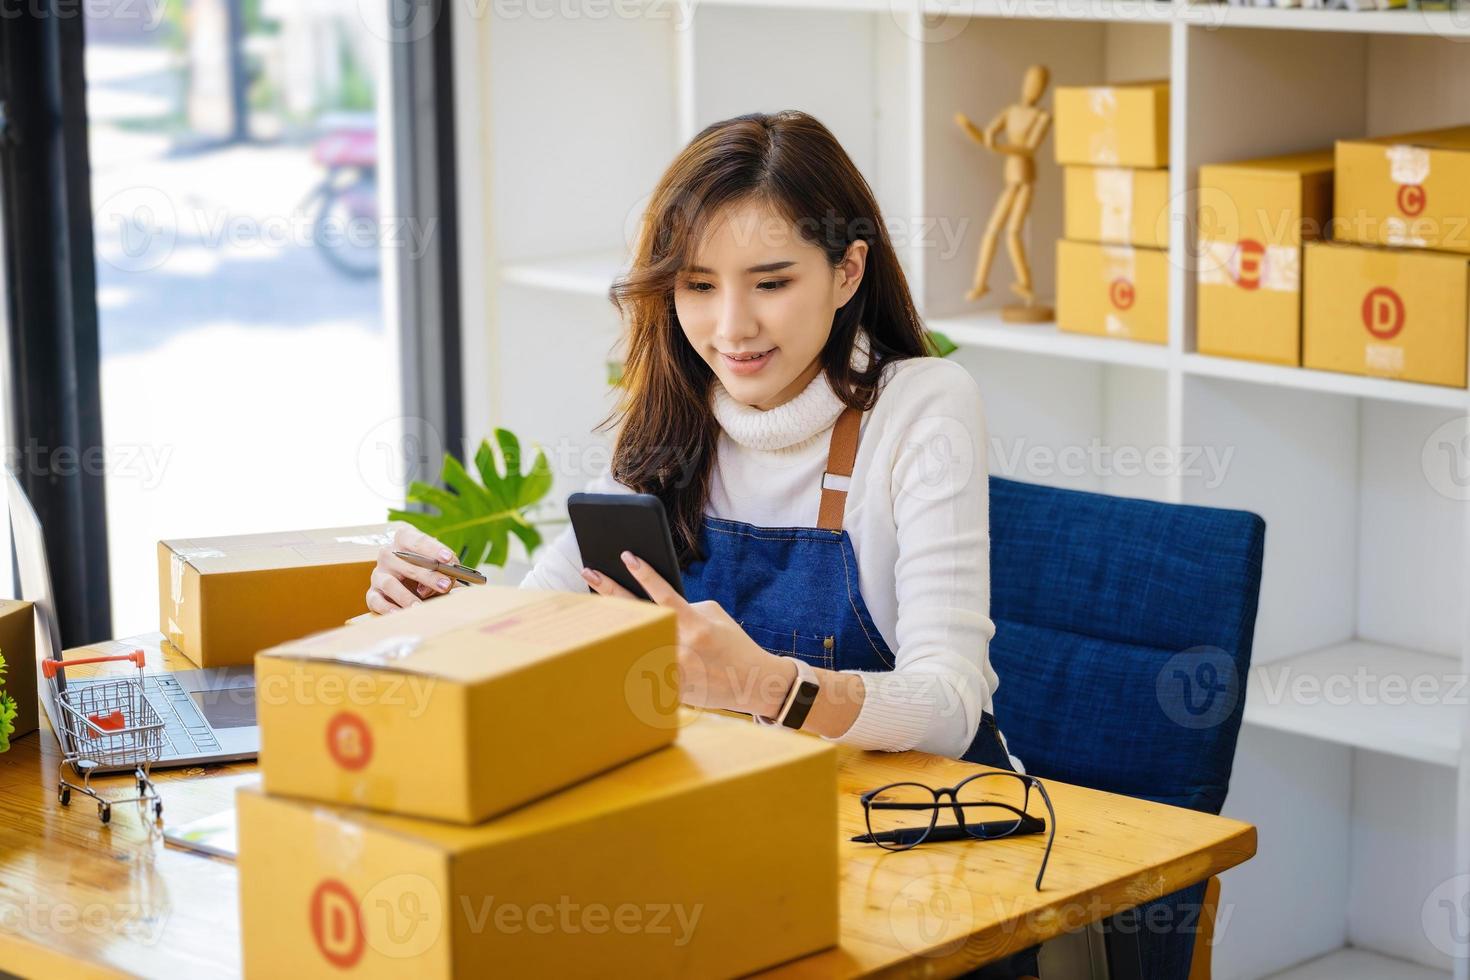 travail à domicile. des femmes heureuses qui vendent des produits en ligne créent une petite entreprise en utilisant un smartphone et un ordinateur portable pour calculer les prix et se préparer à l'affranchissement. photo